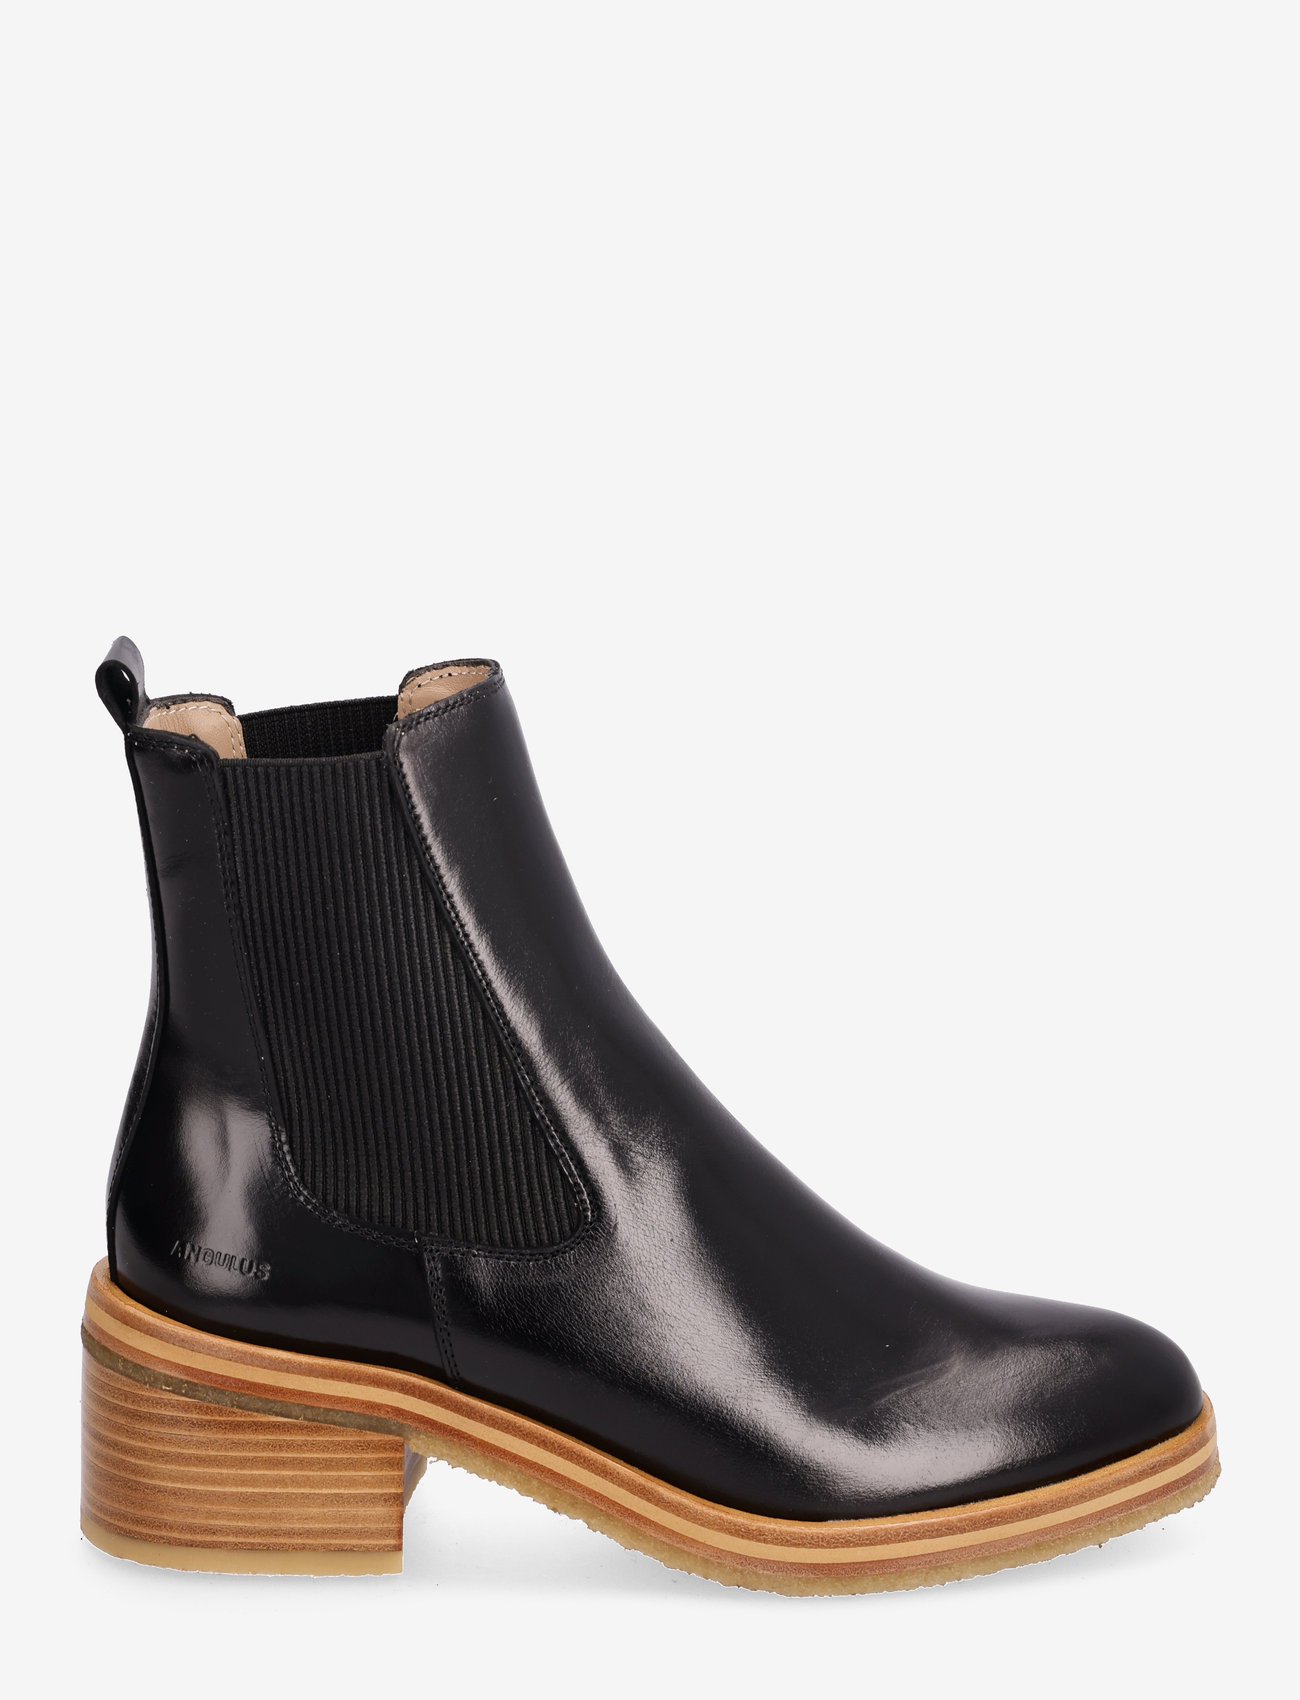 ANGULUS - Bootie - block heel - with zippe - høye hæler - 1835/019 black /black - 1